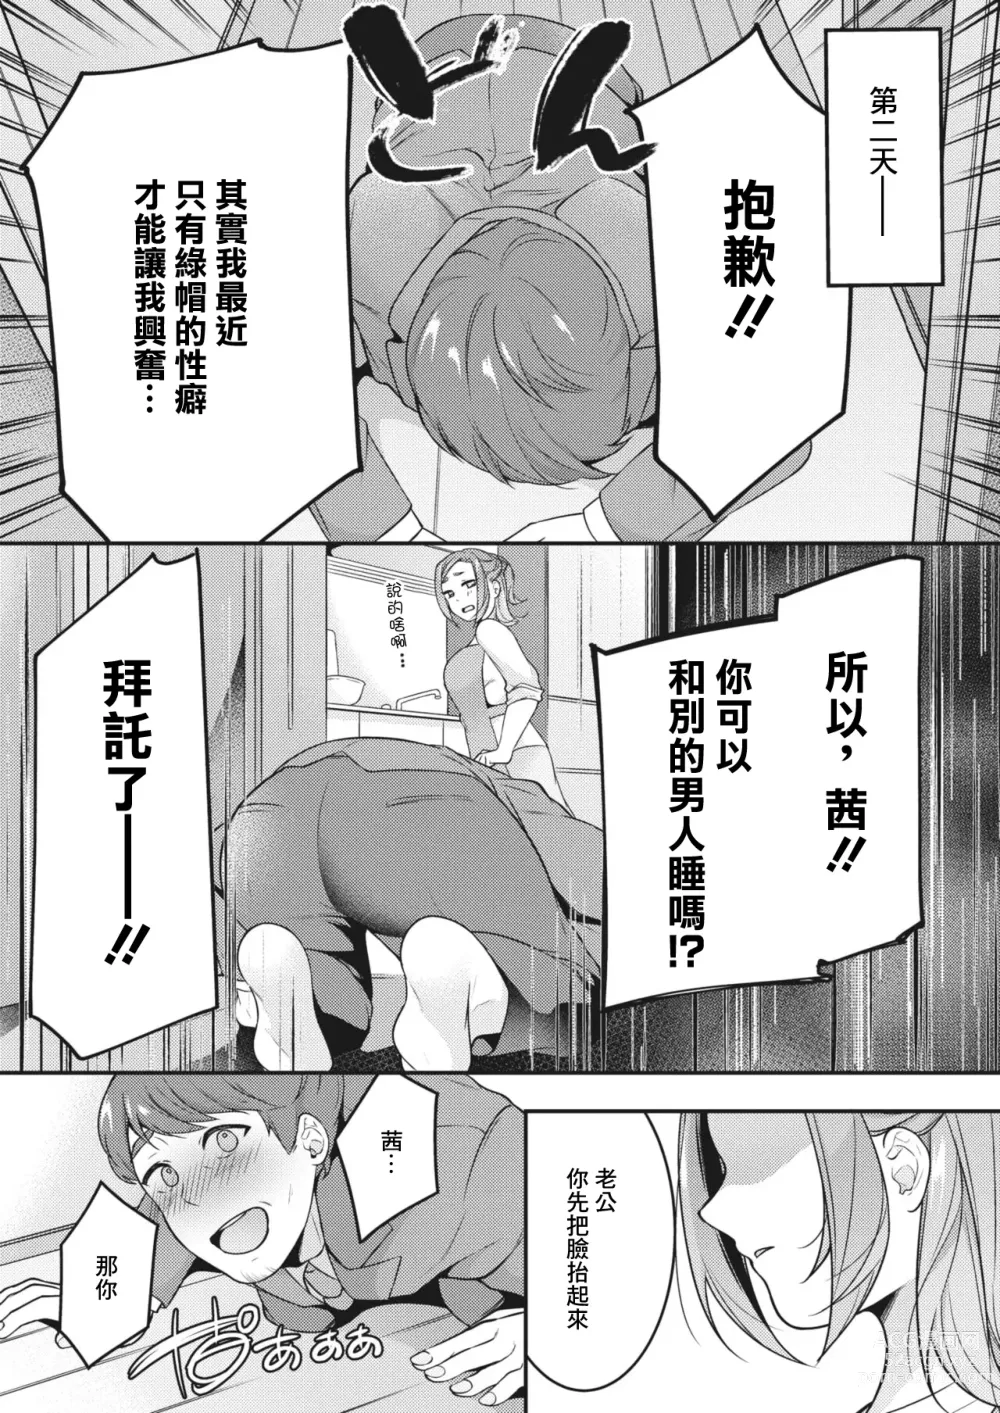 Page 2 of manga Danna to Shitai dake nanoni...